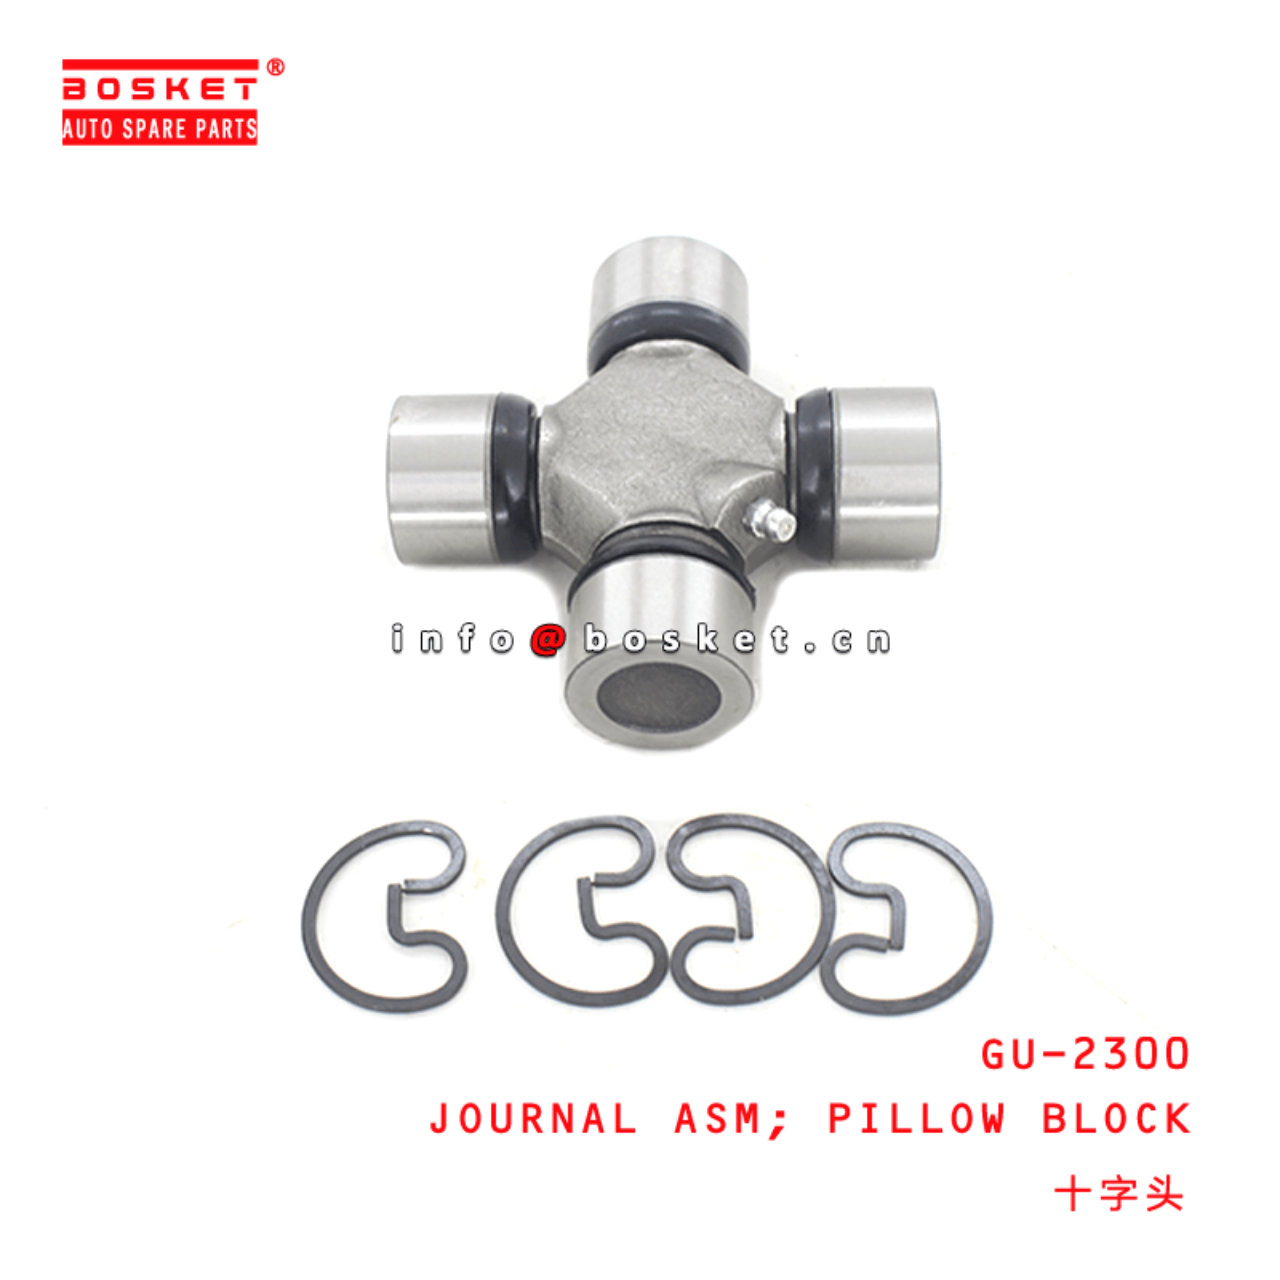 GU-2300 Pillow Block Journal Assembly Suitable for ISUZU 